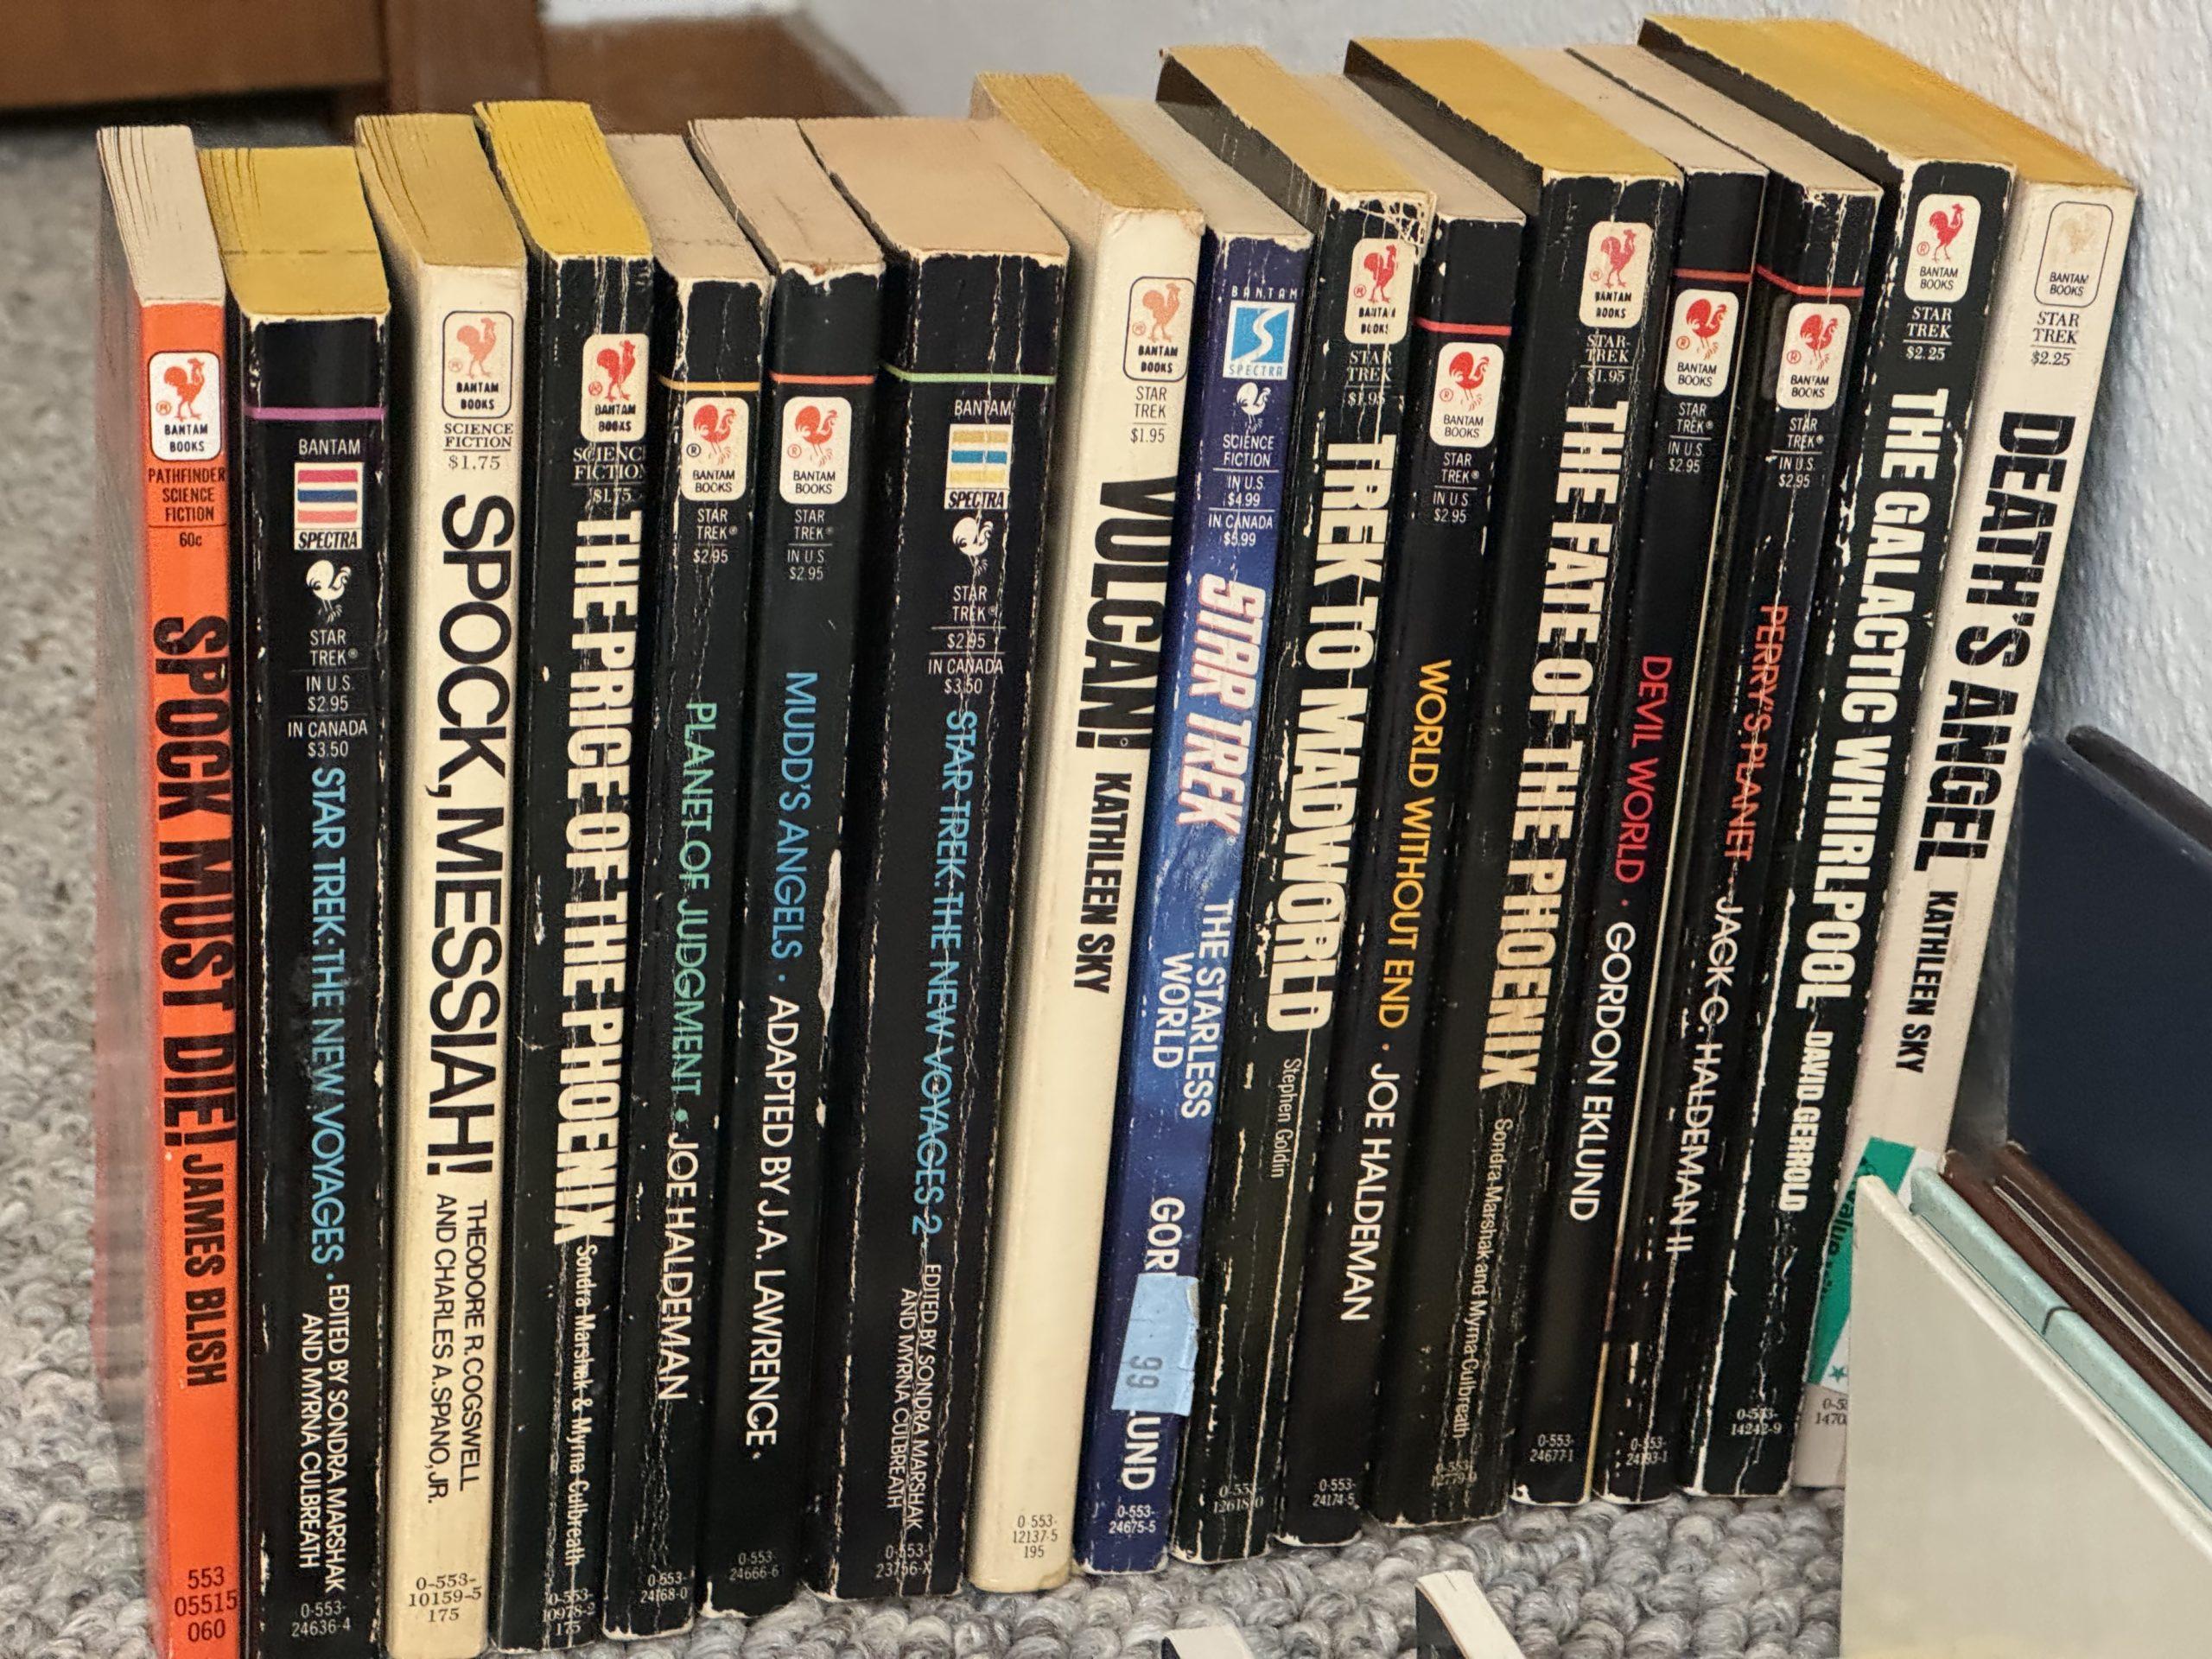 The sixteen Bantam Star Trek novels.